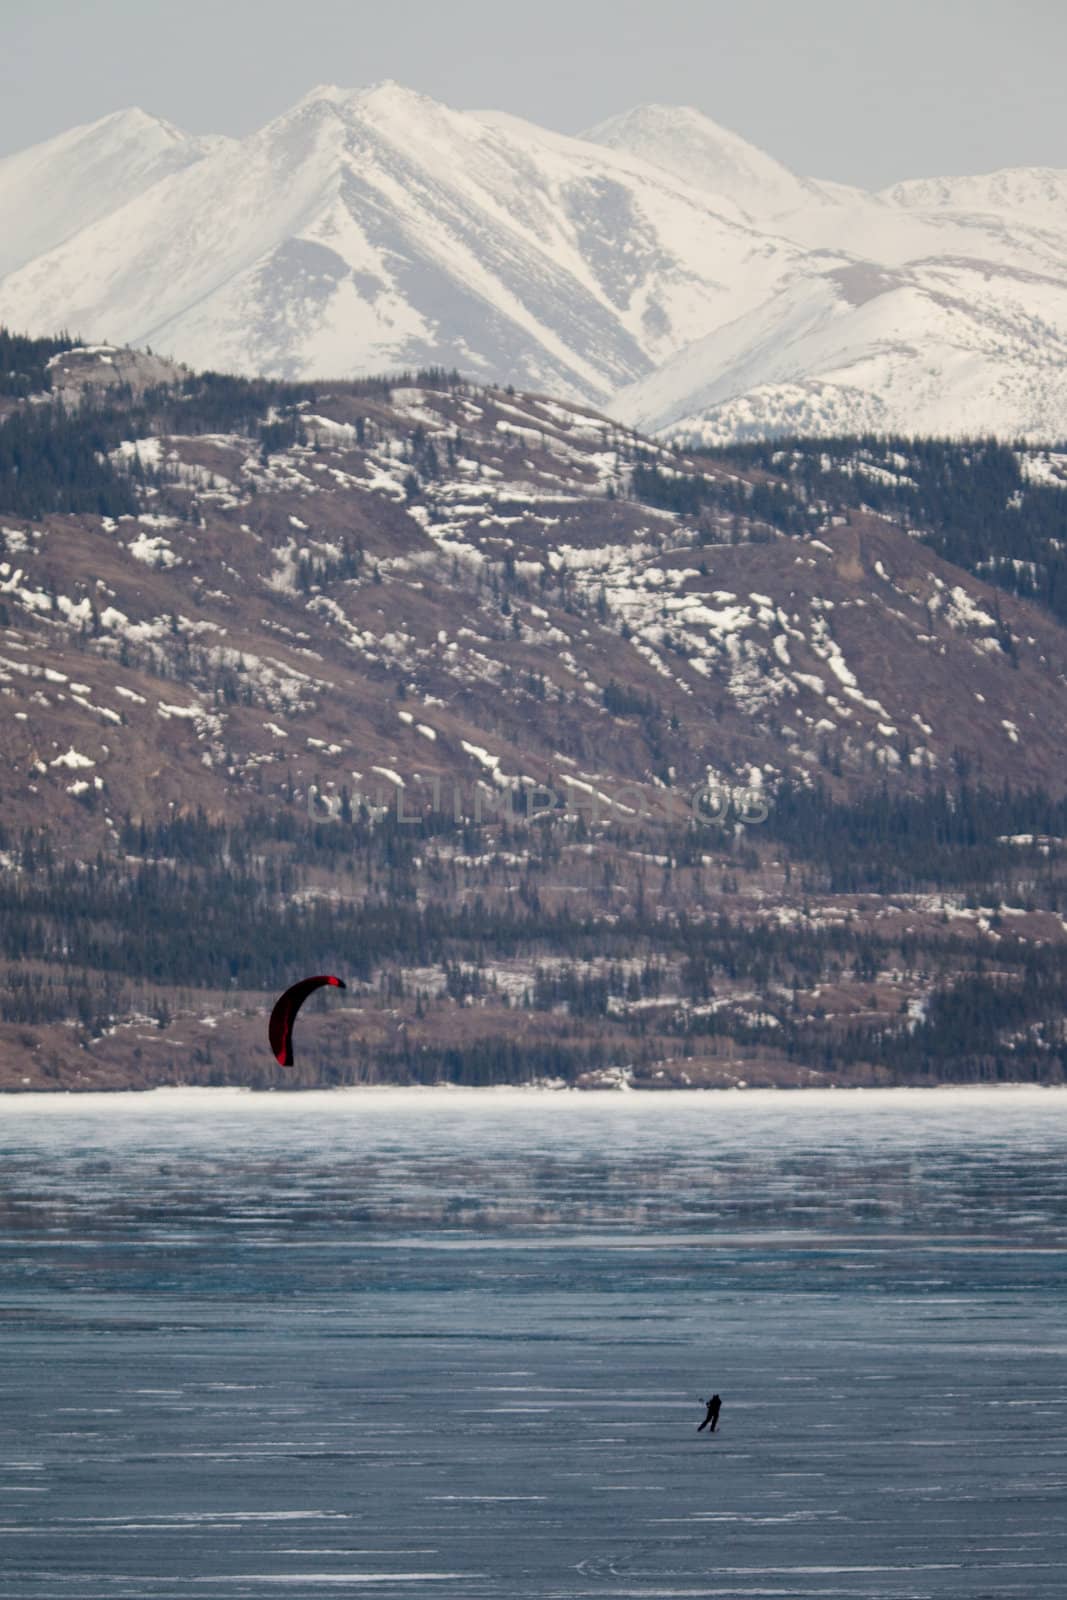 Ski-Kiting on frozen Lake